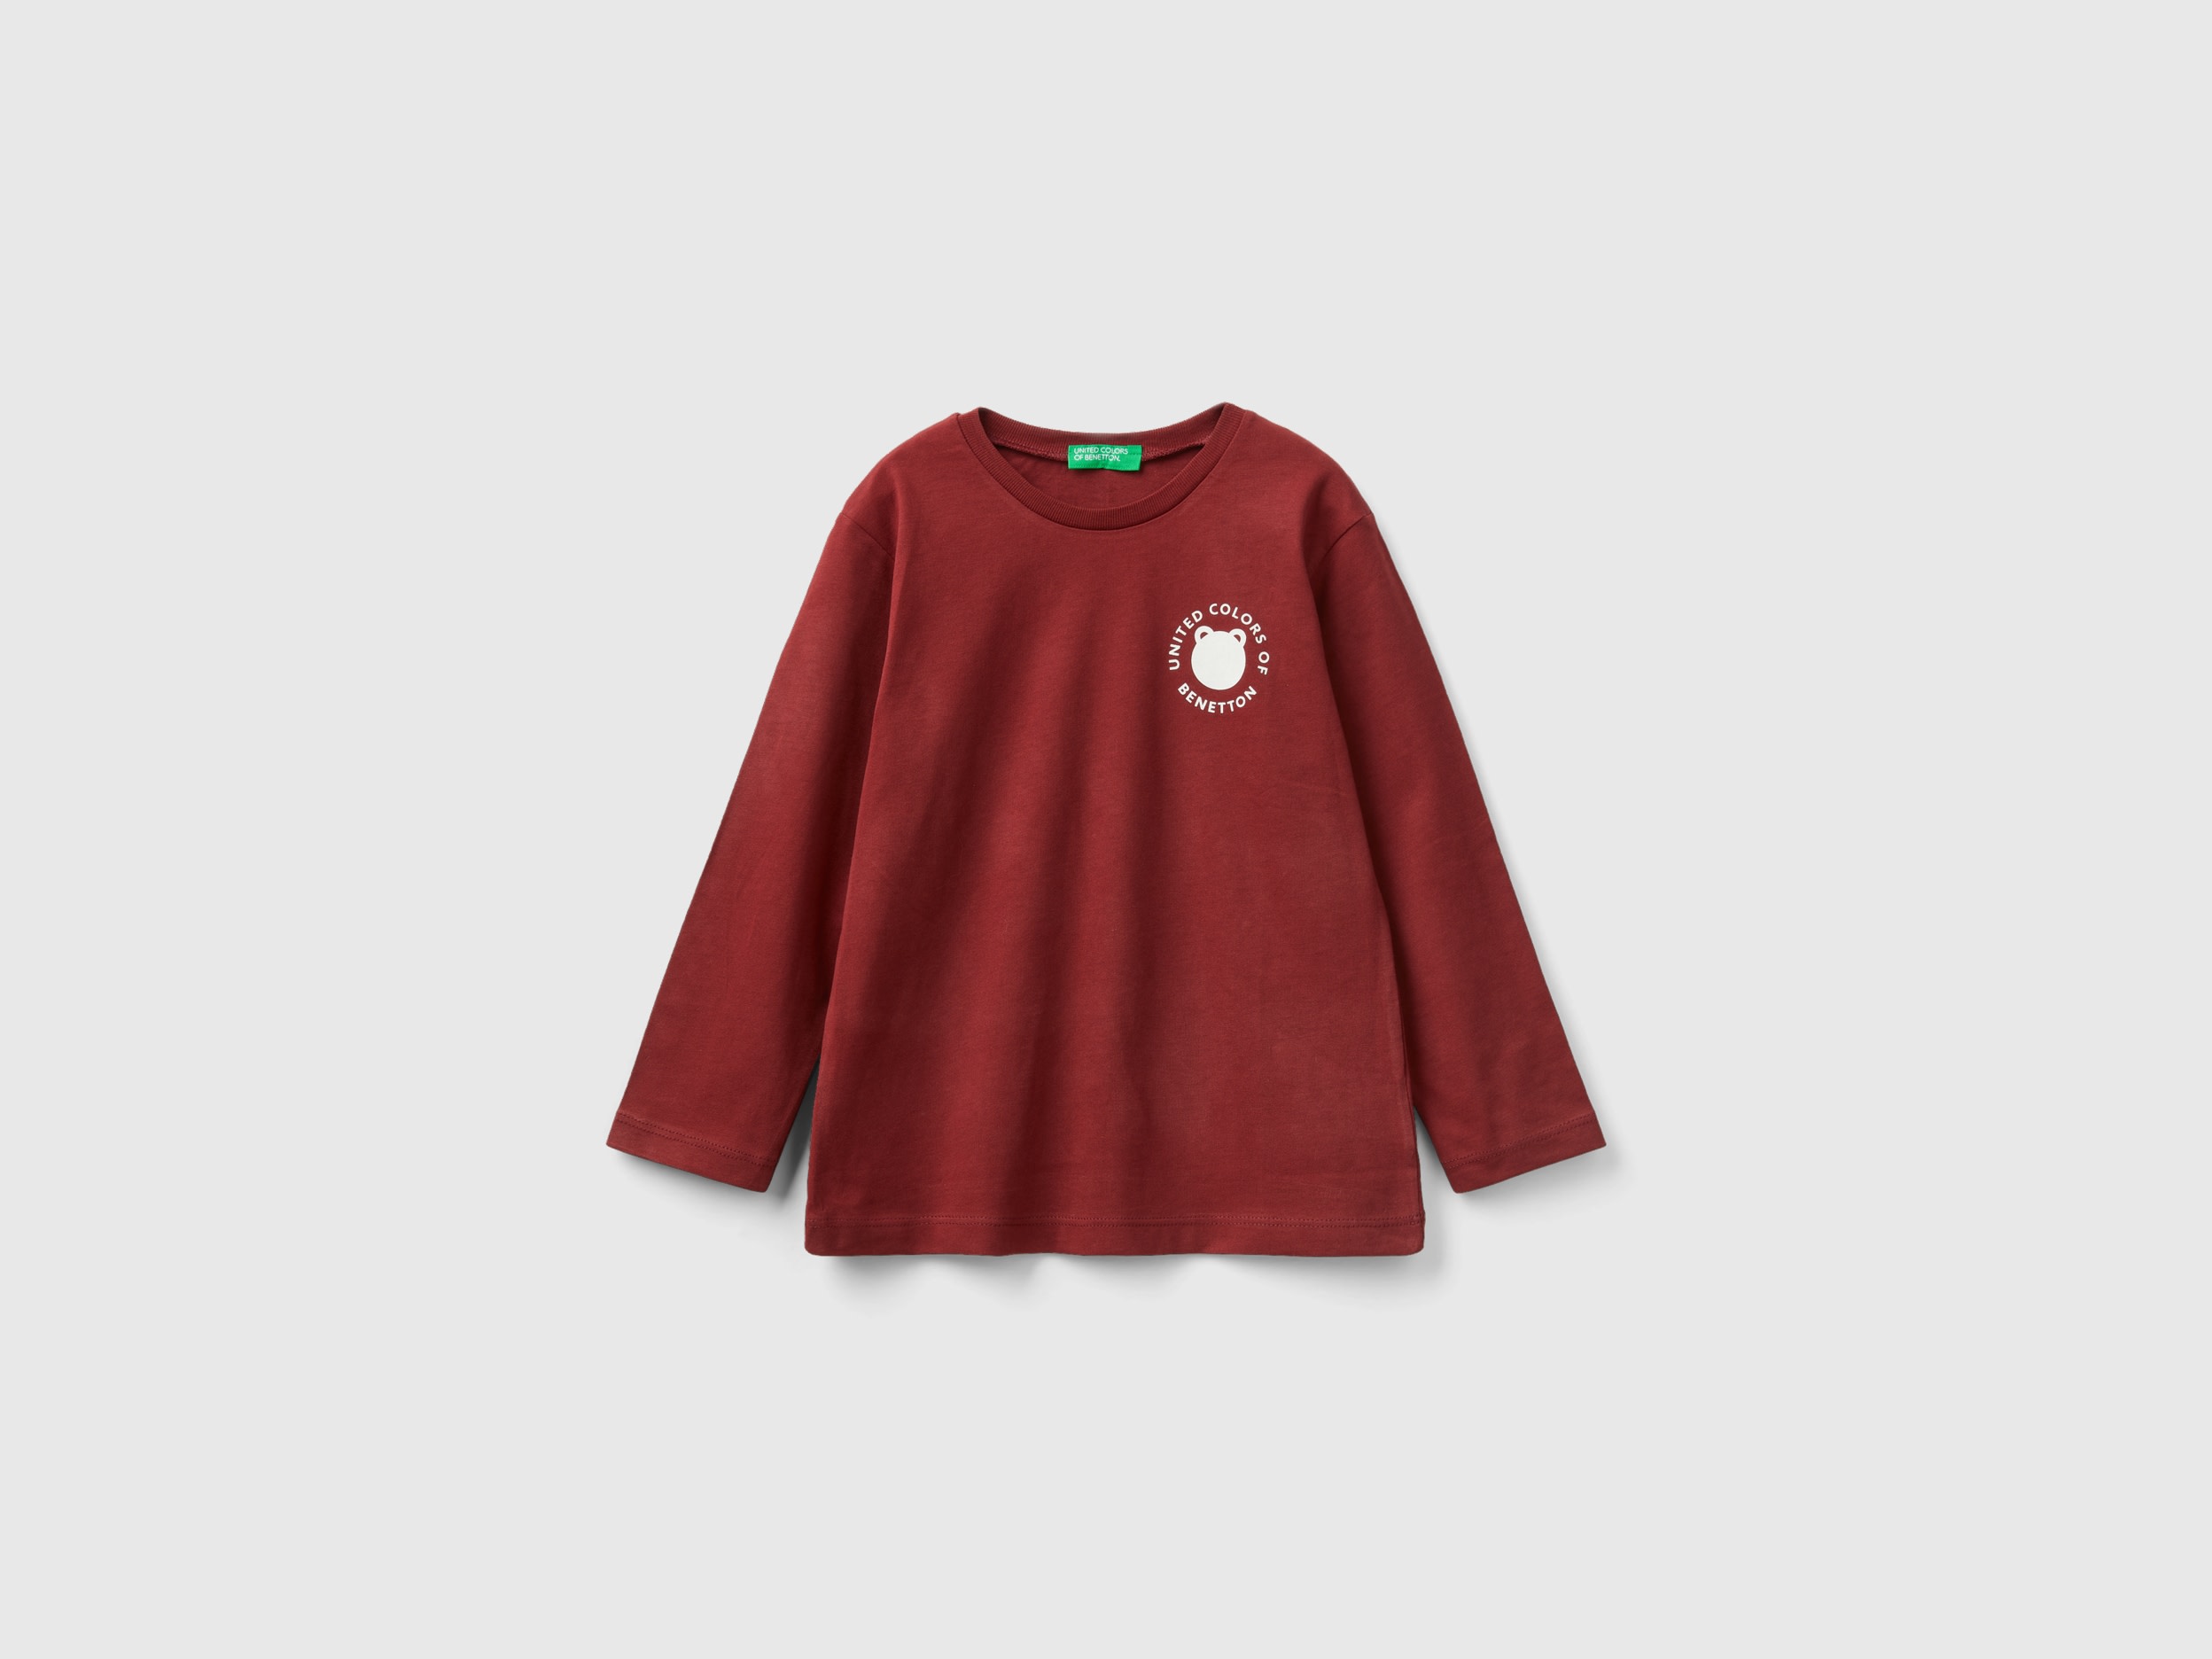 Benetton, Crew Neck T-shirt In Warm Organic Cotton, size 4-5, Burgundy, Kids